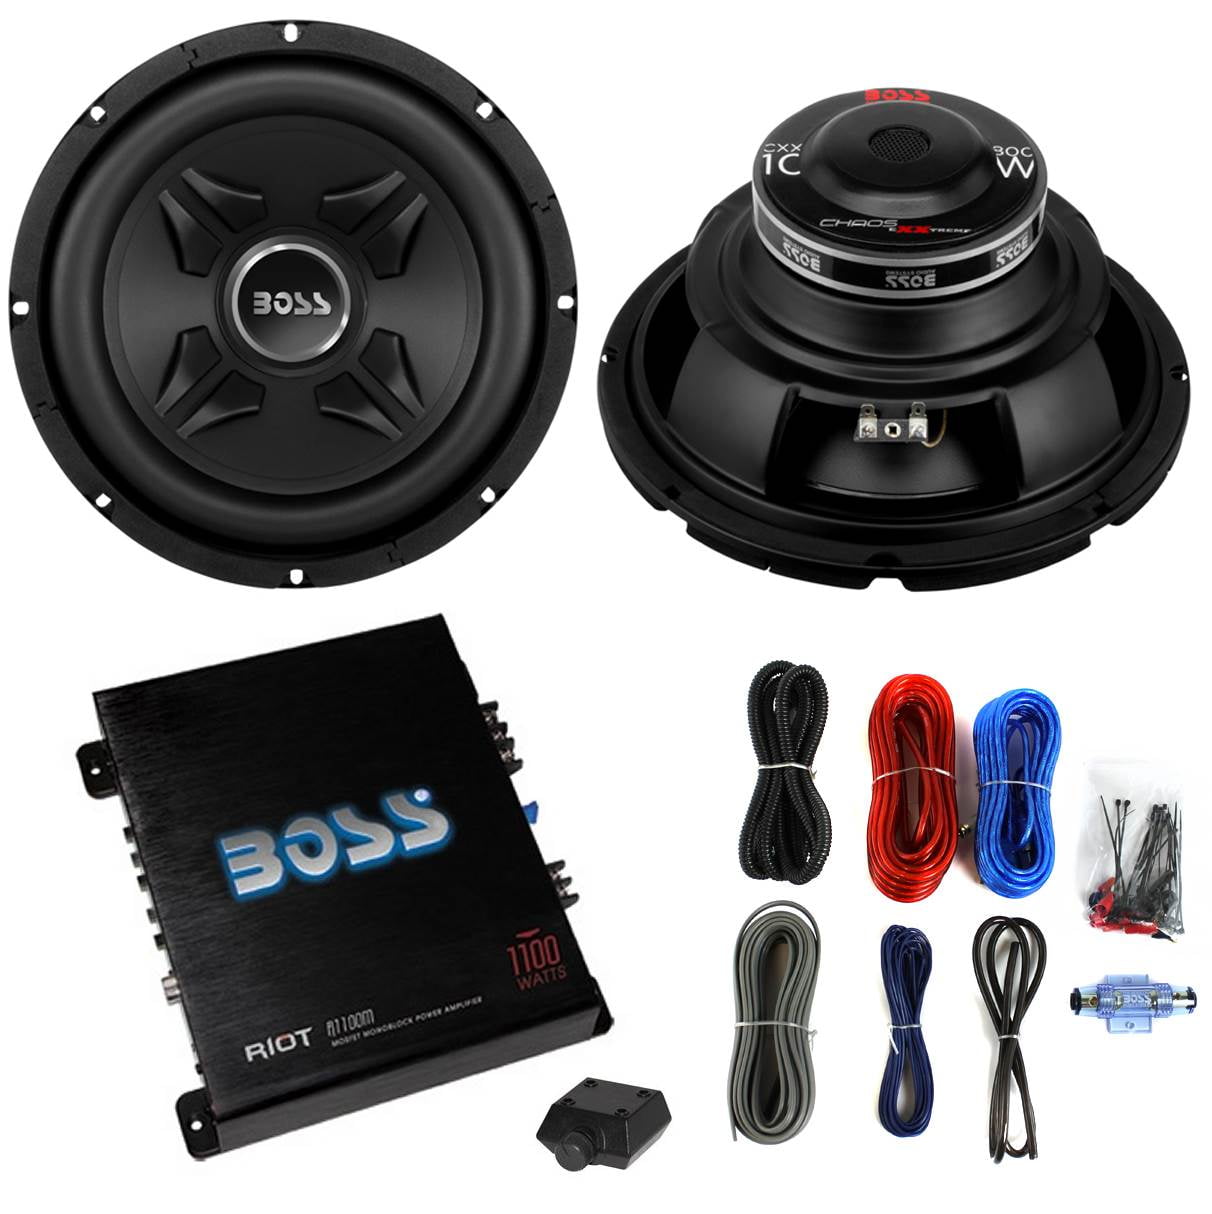 2 Boss CXX10 10" 1600W Car Audio Power Subwoofer Sub & Mono Amplifier